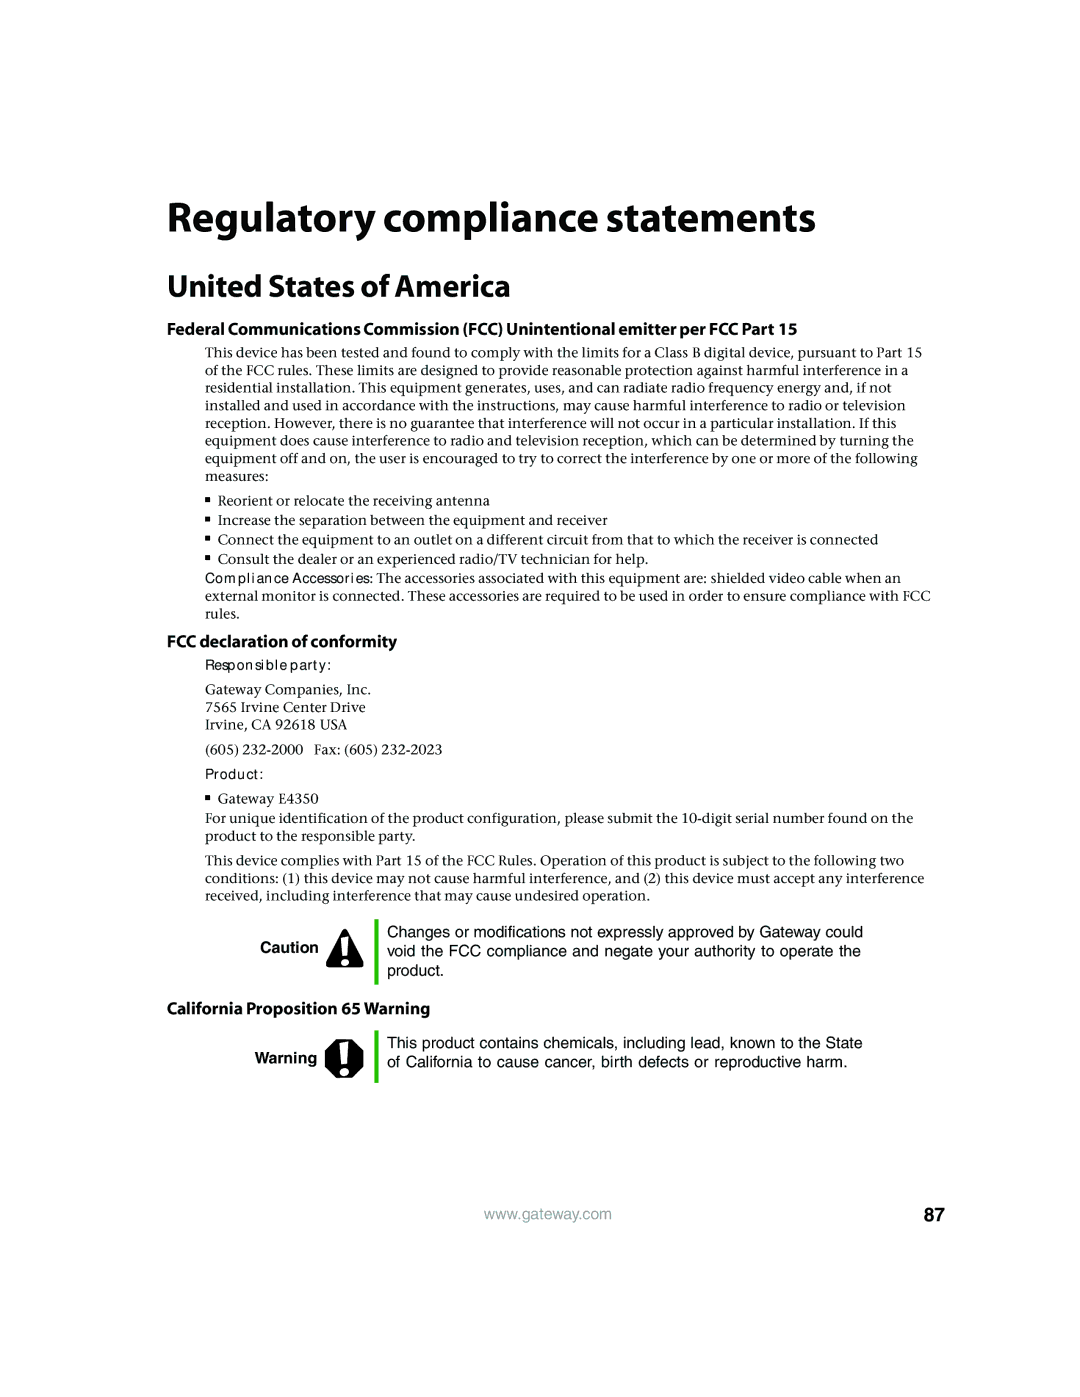 Gateway E4350 manual Regulatory compliance statements, United States of America 